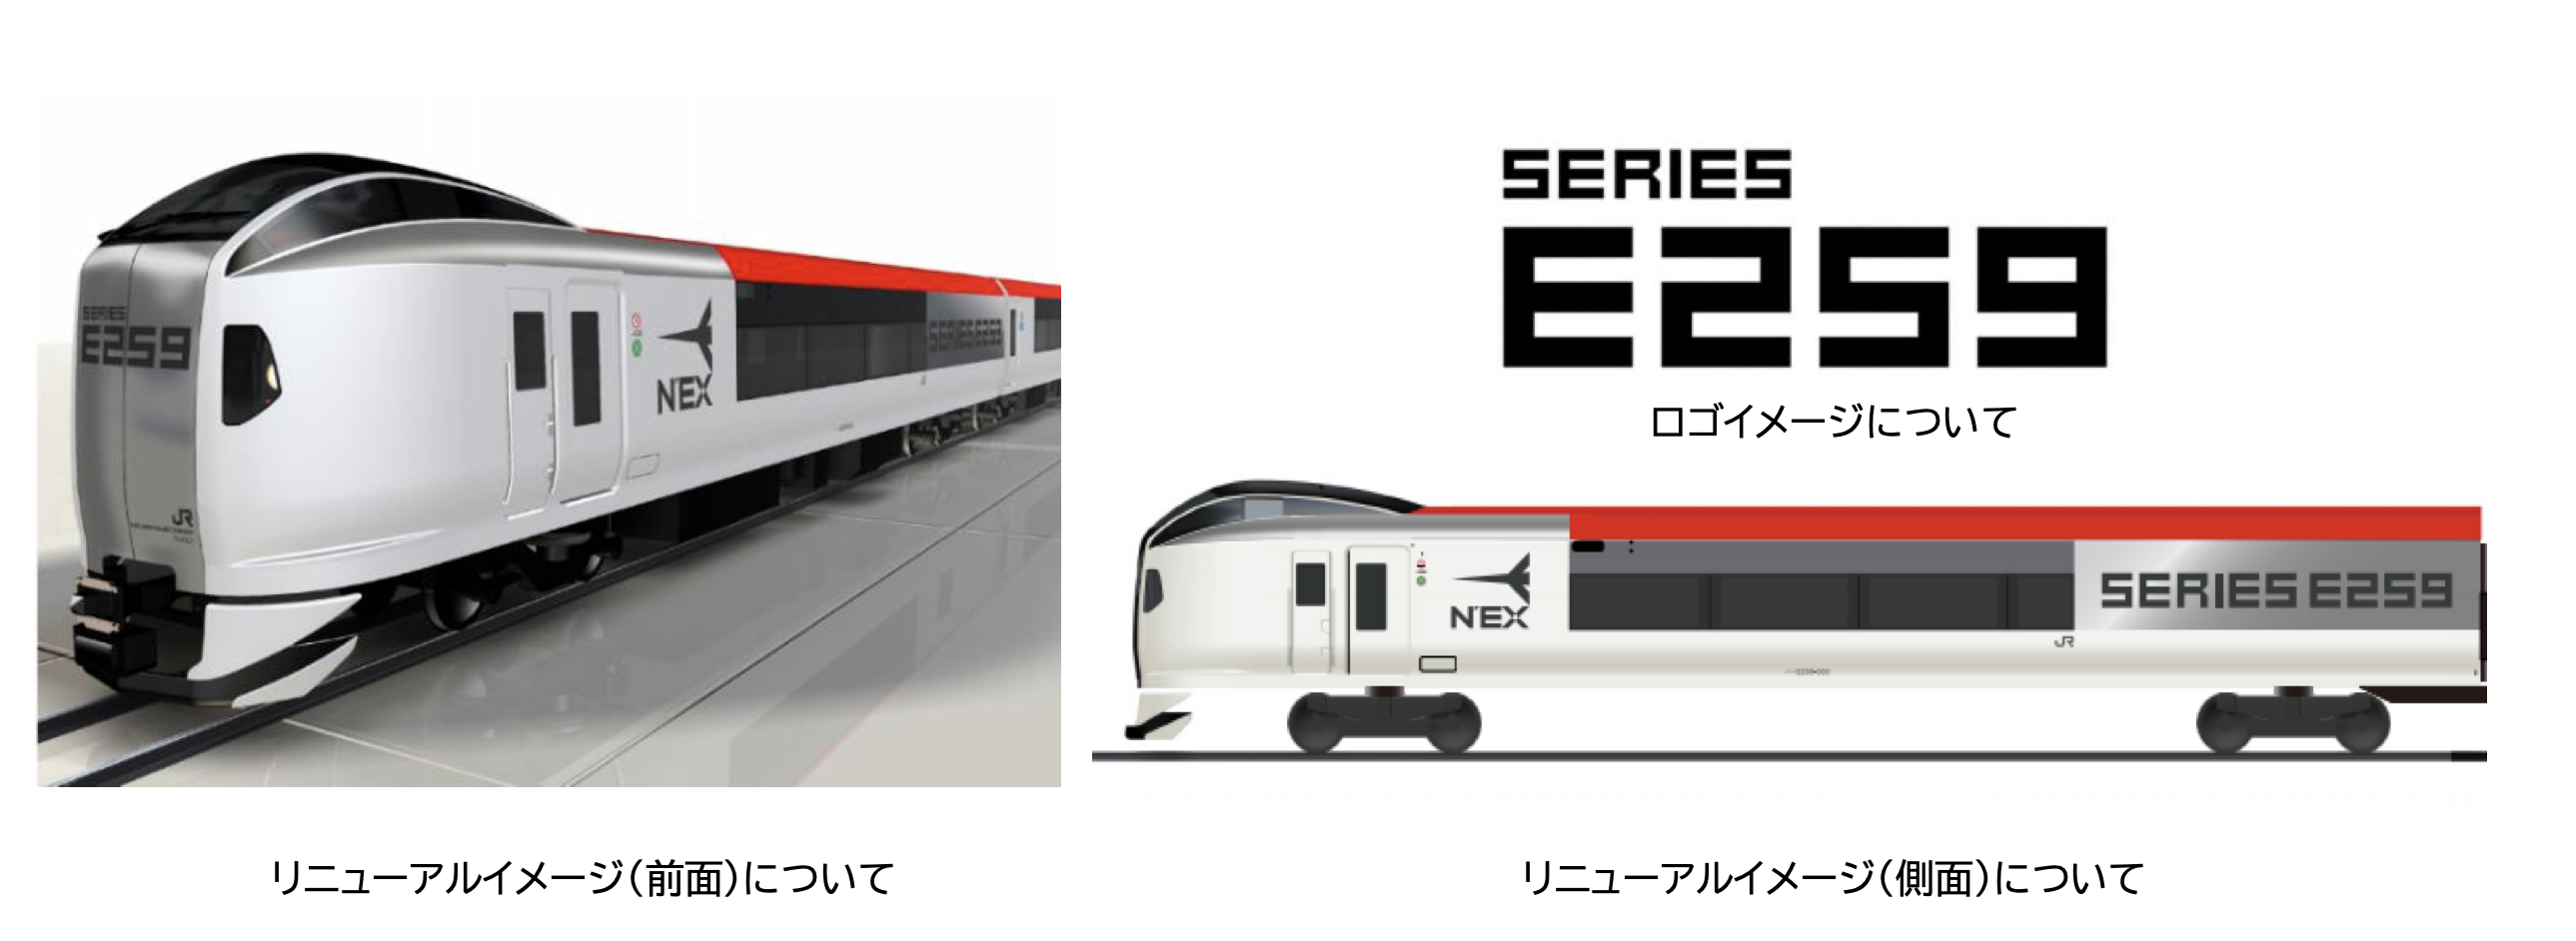 Das neue Design des JR Narita Express.